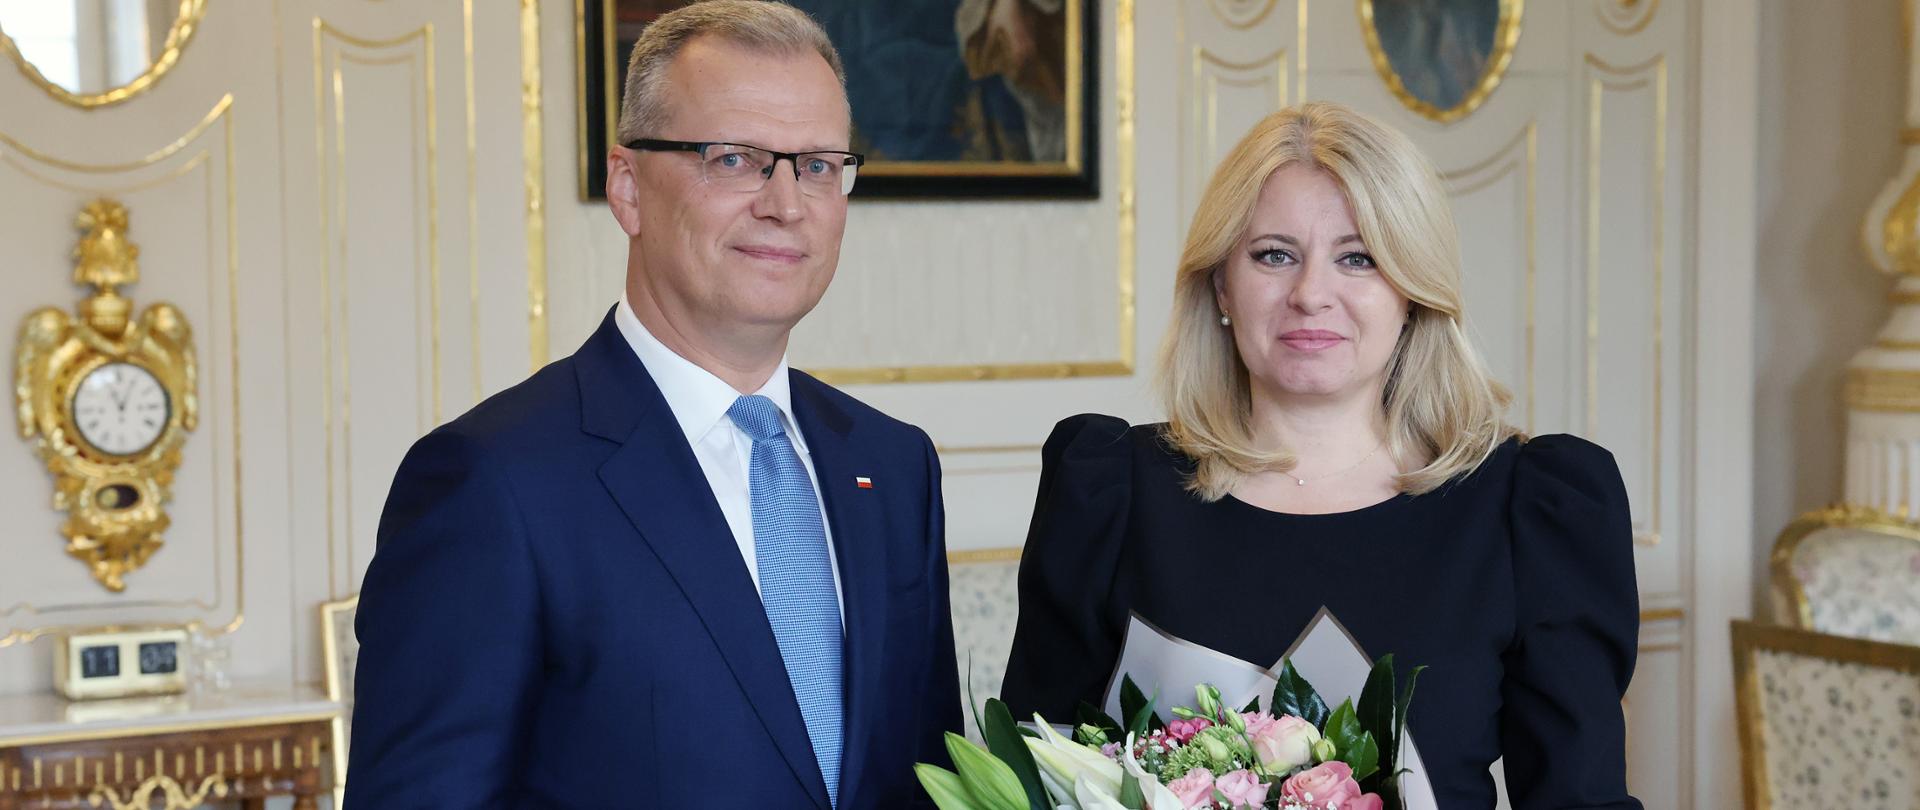 Spotkanie pożegnalne Ambasadora RP Krzysztofa Strzałki z Panią Prezydent Słowacji Zuzanną Czaputovą